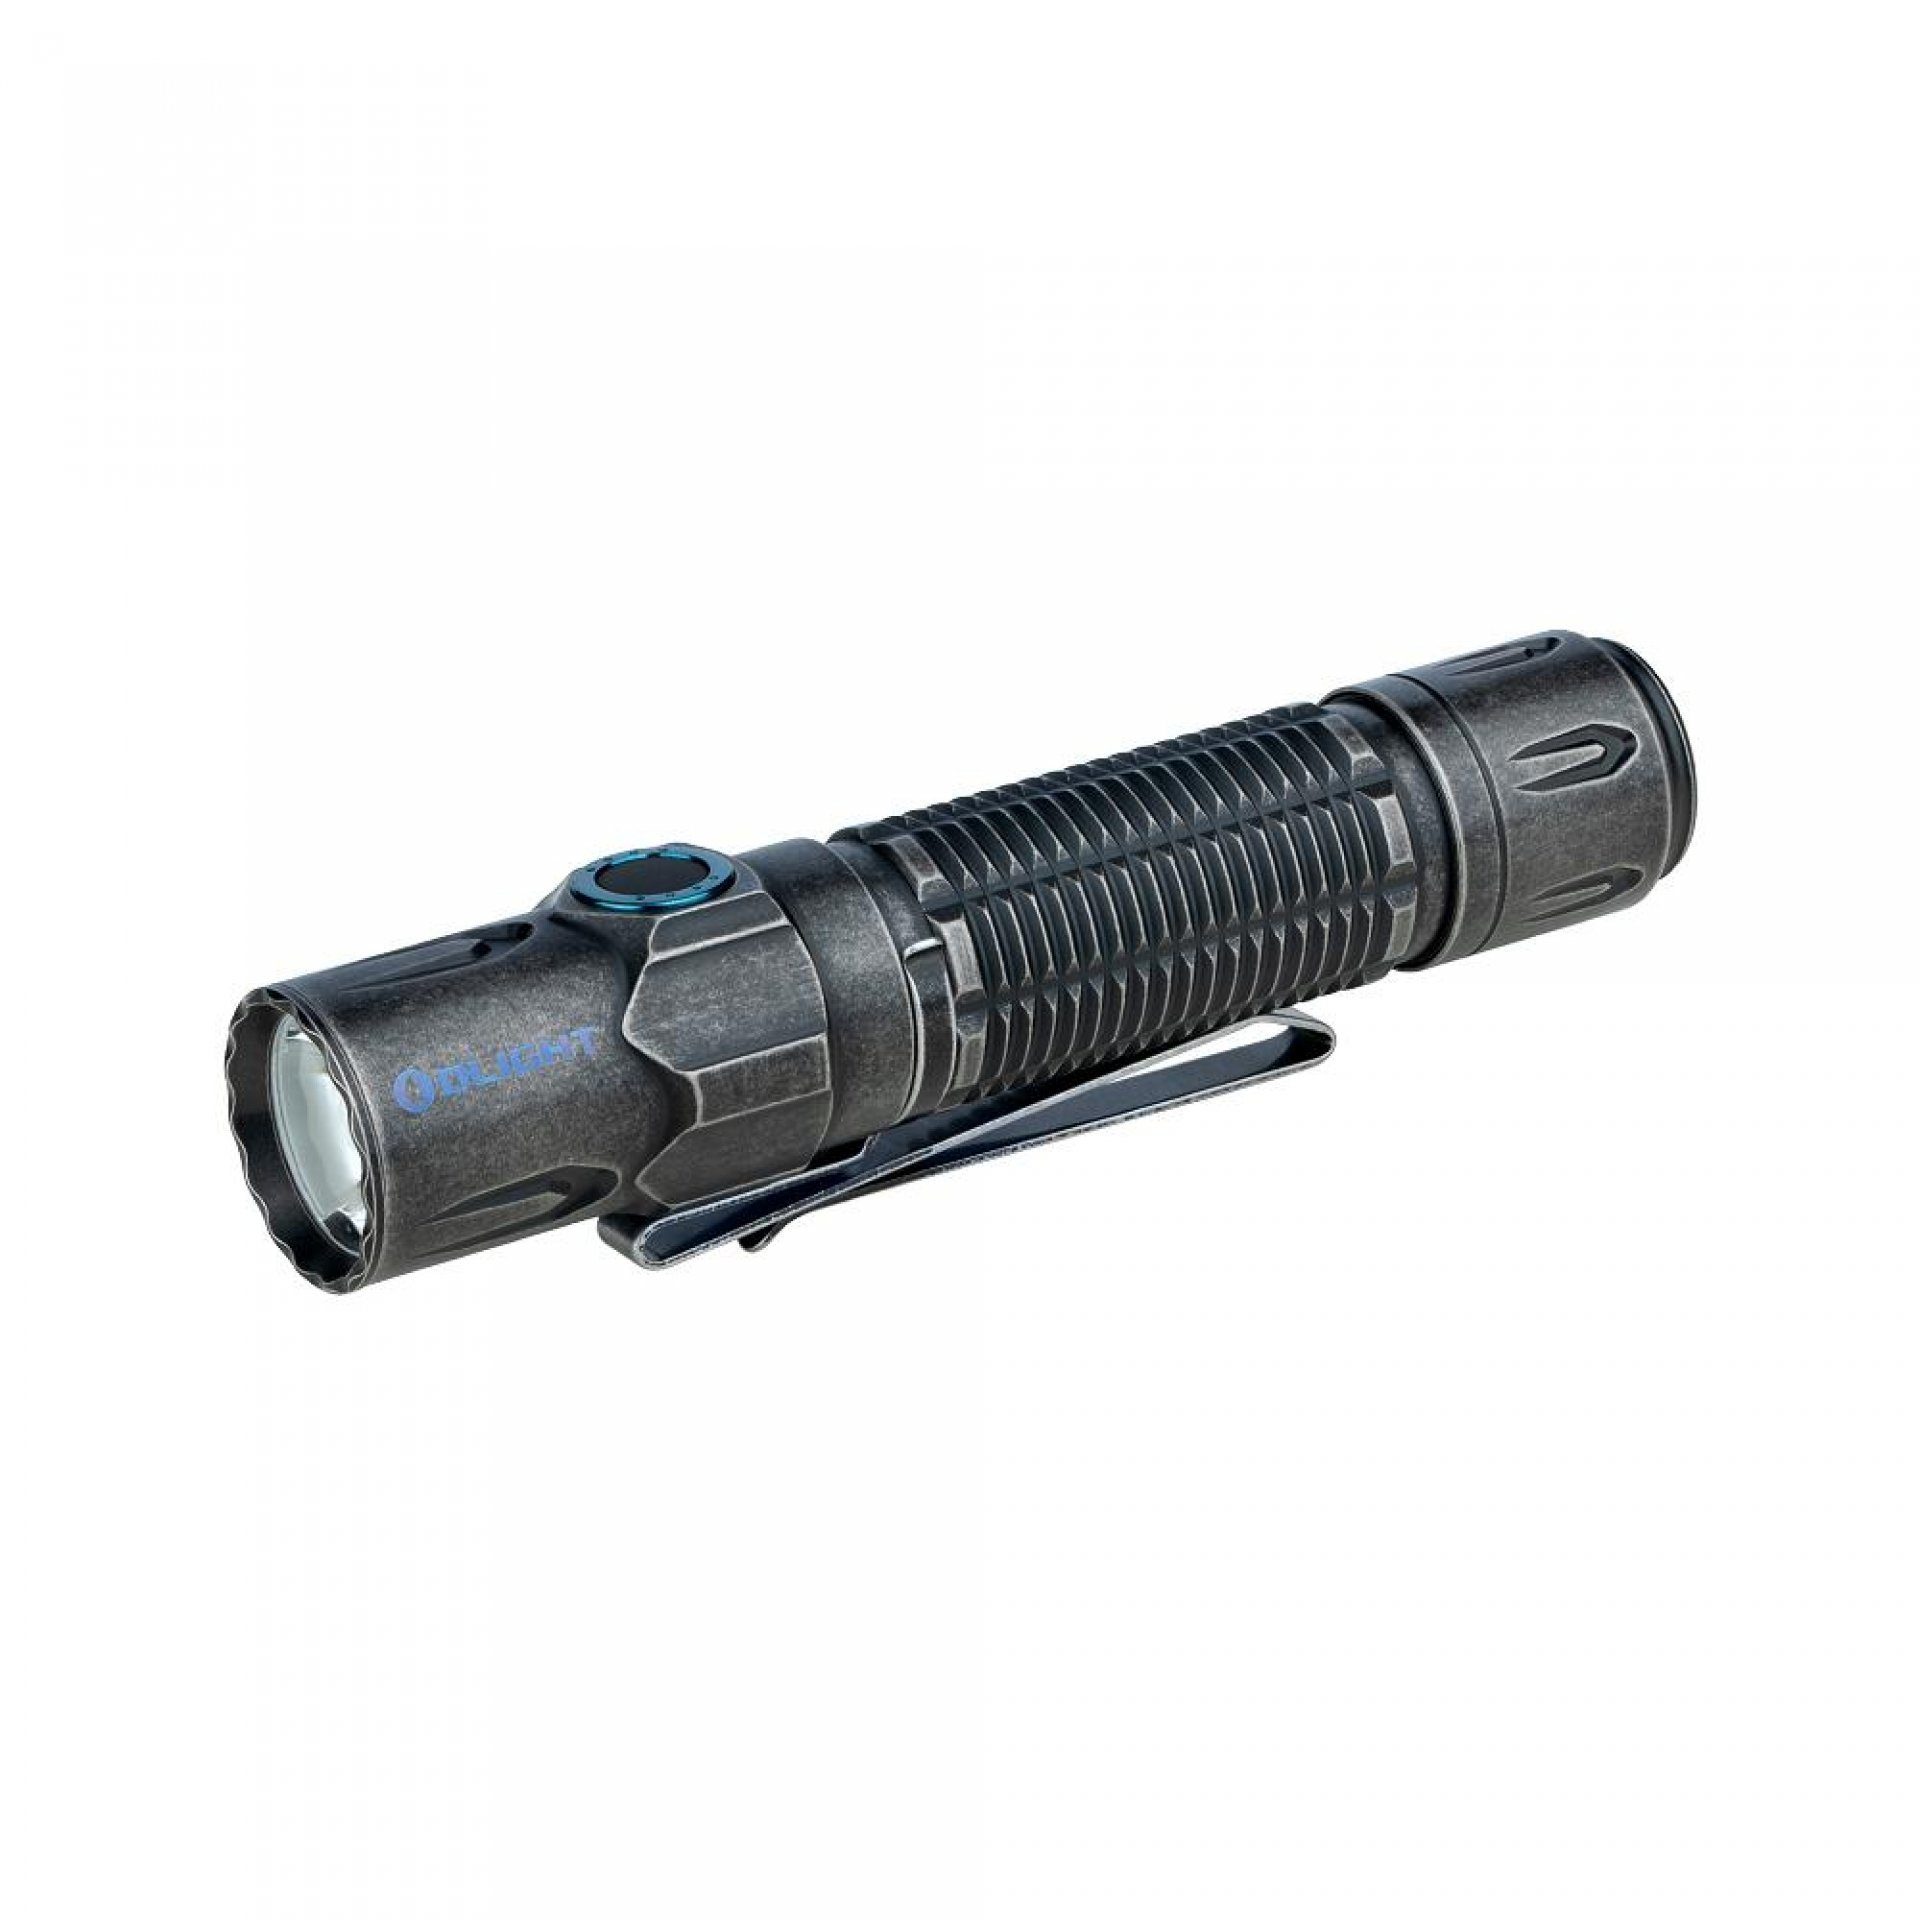 OLIGHT Taschenlampe Warrior 3S LED Taktische Superhelle Taschenlampe USB Wiederaufladbar, USB Wiederaufladbar mit Abstandssensor, für Alltag, Outdoor, etc Ti-Black-Stonewash